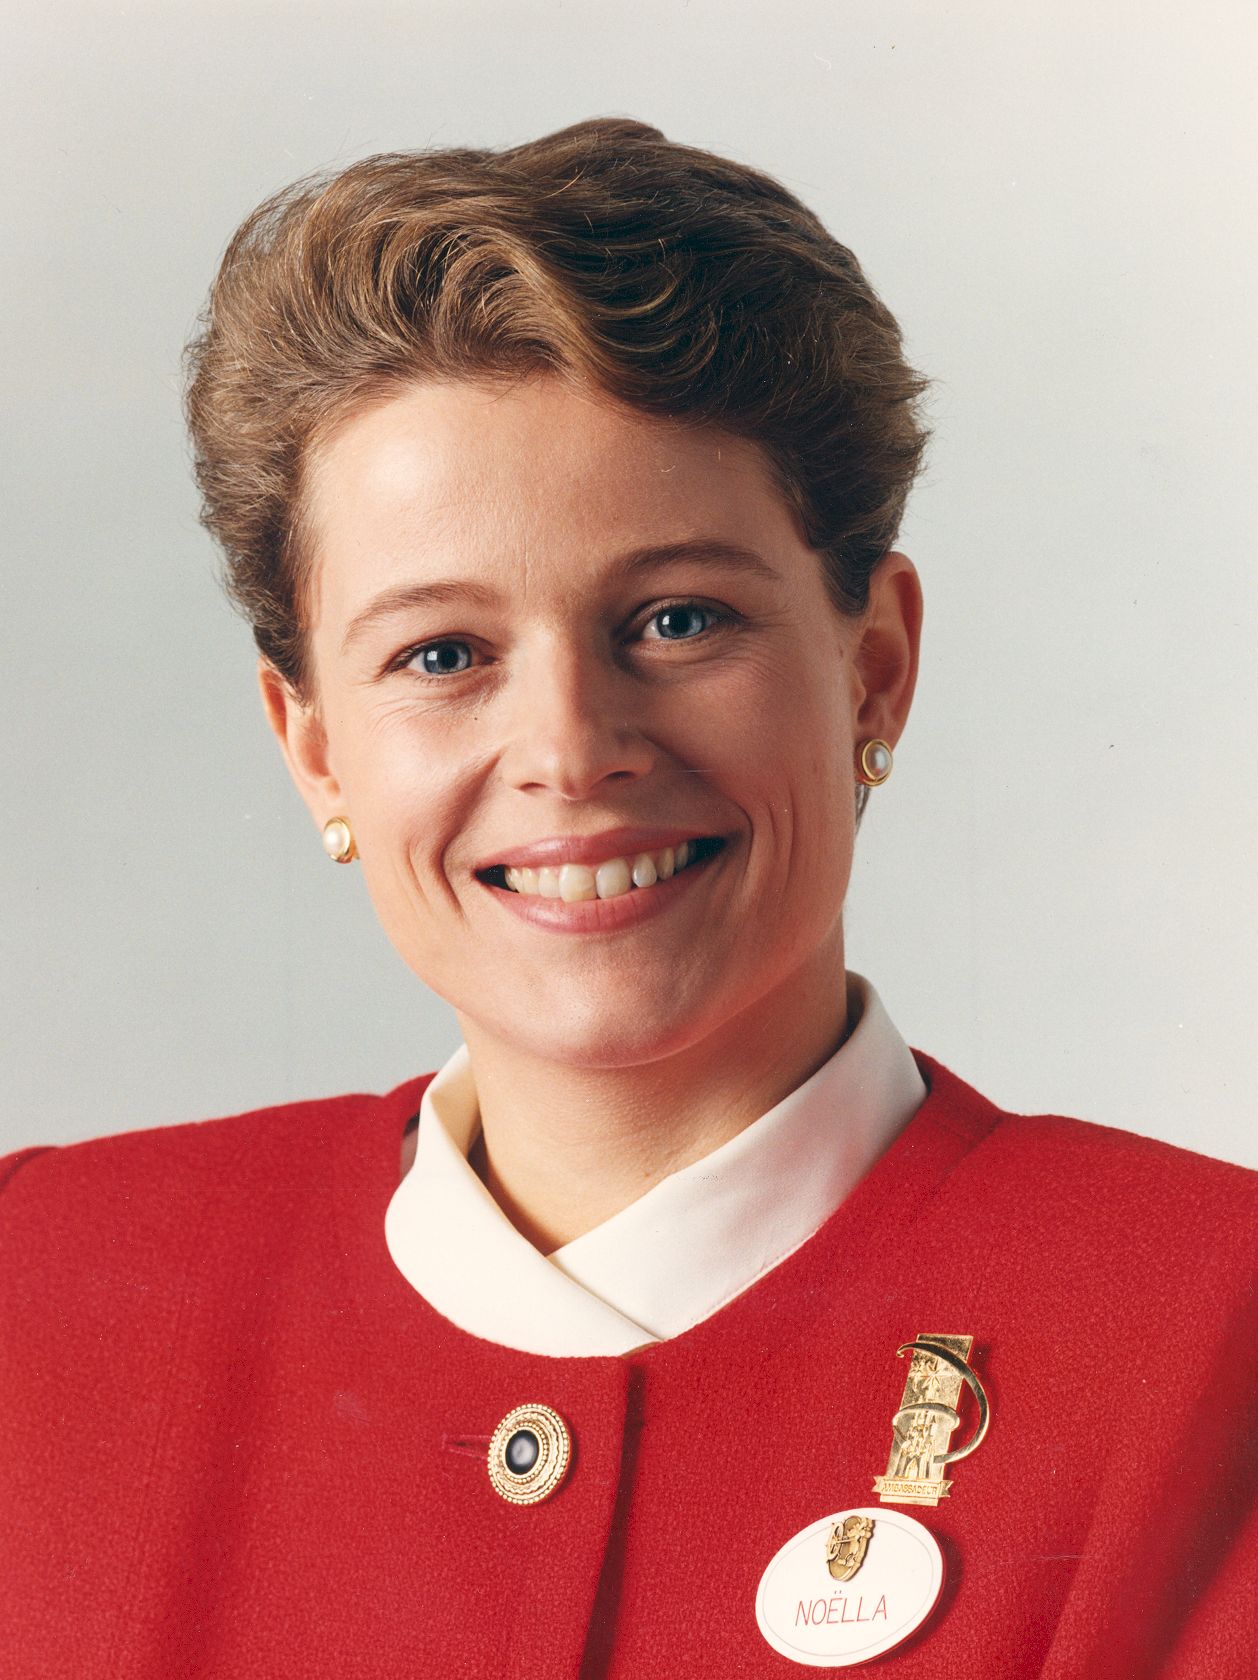 Noella Gemke1993